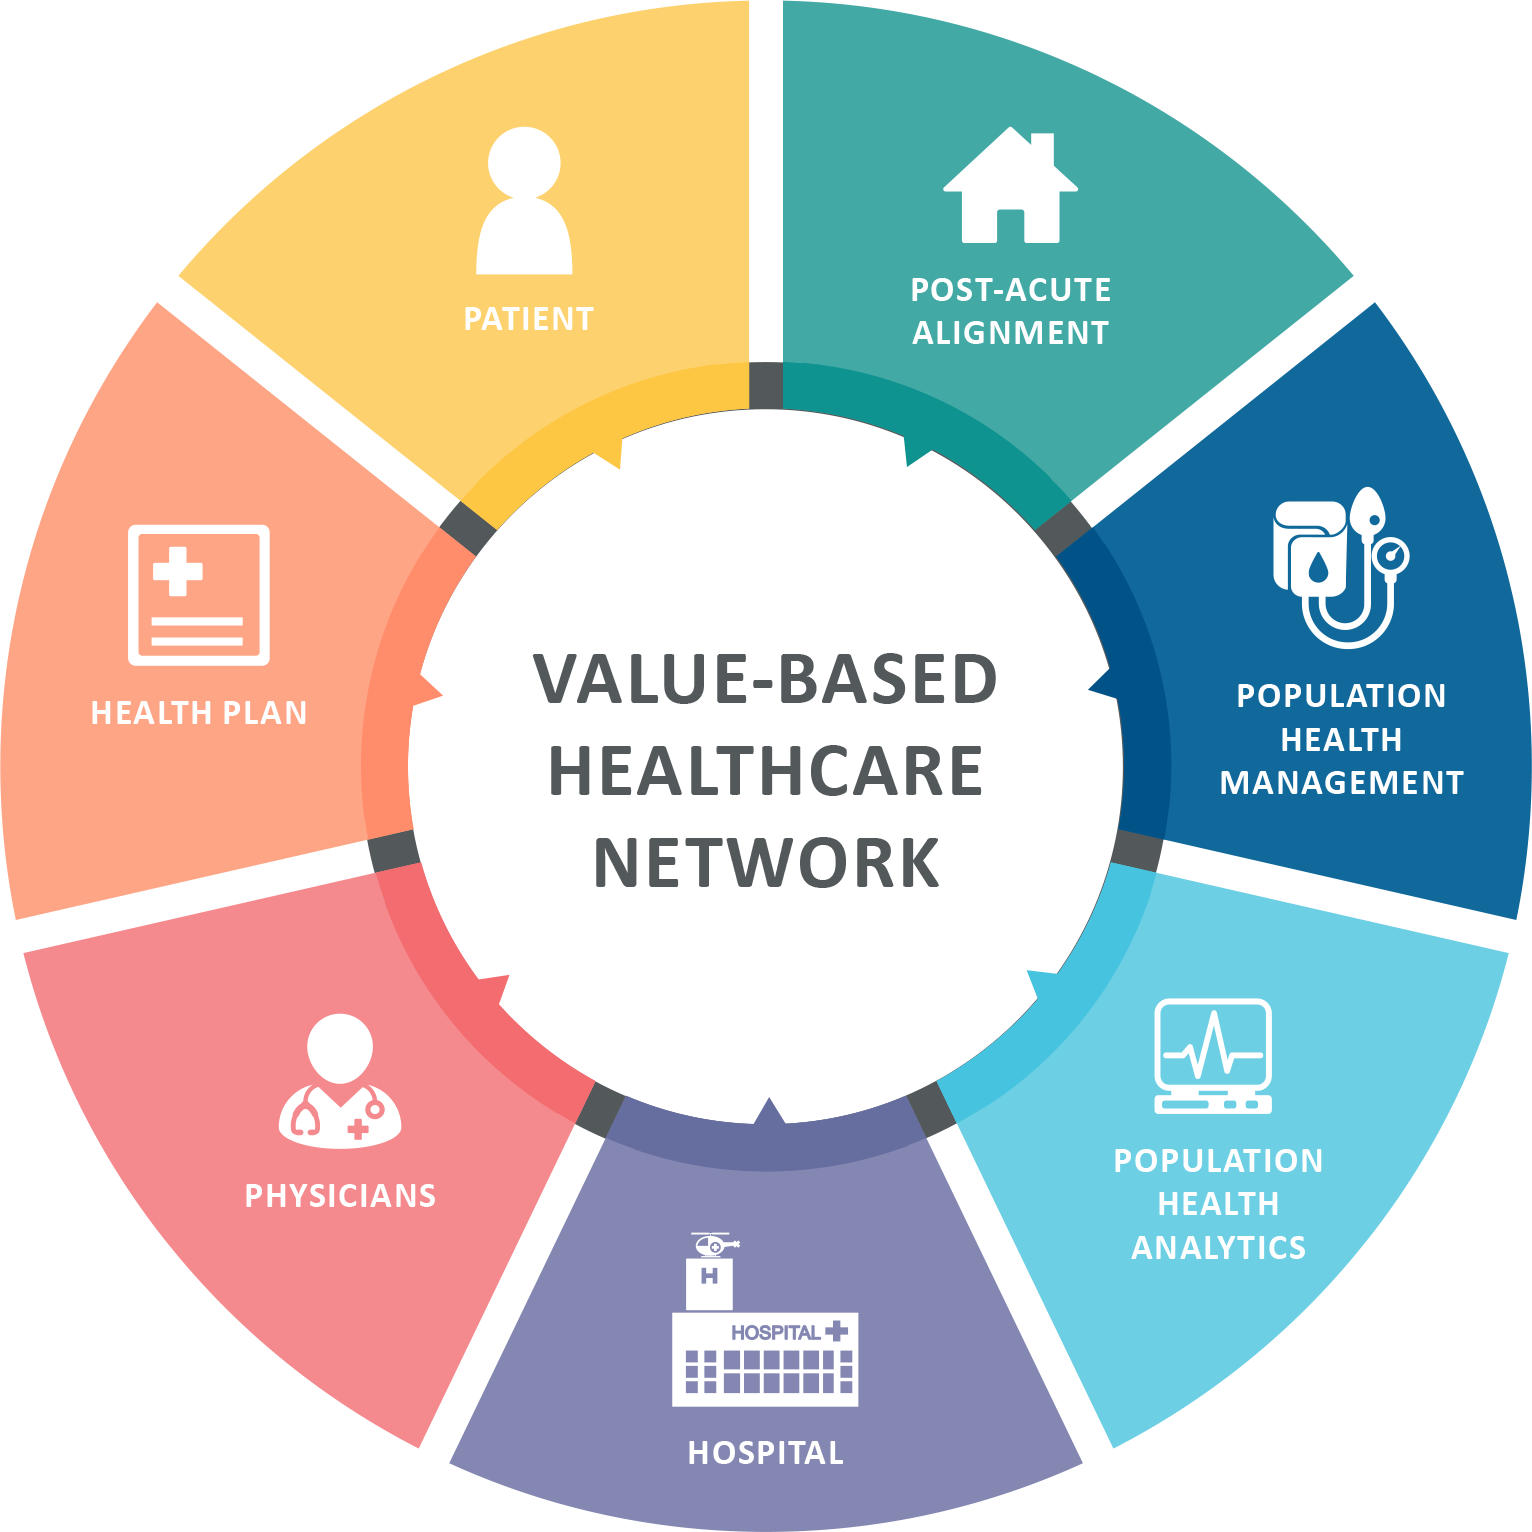 Value-based health care models